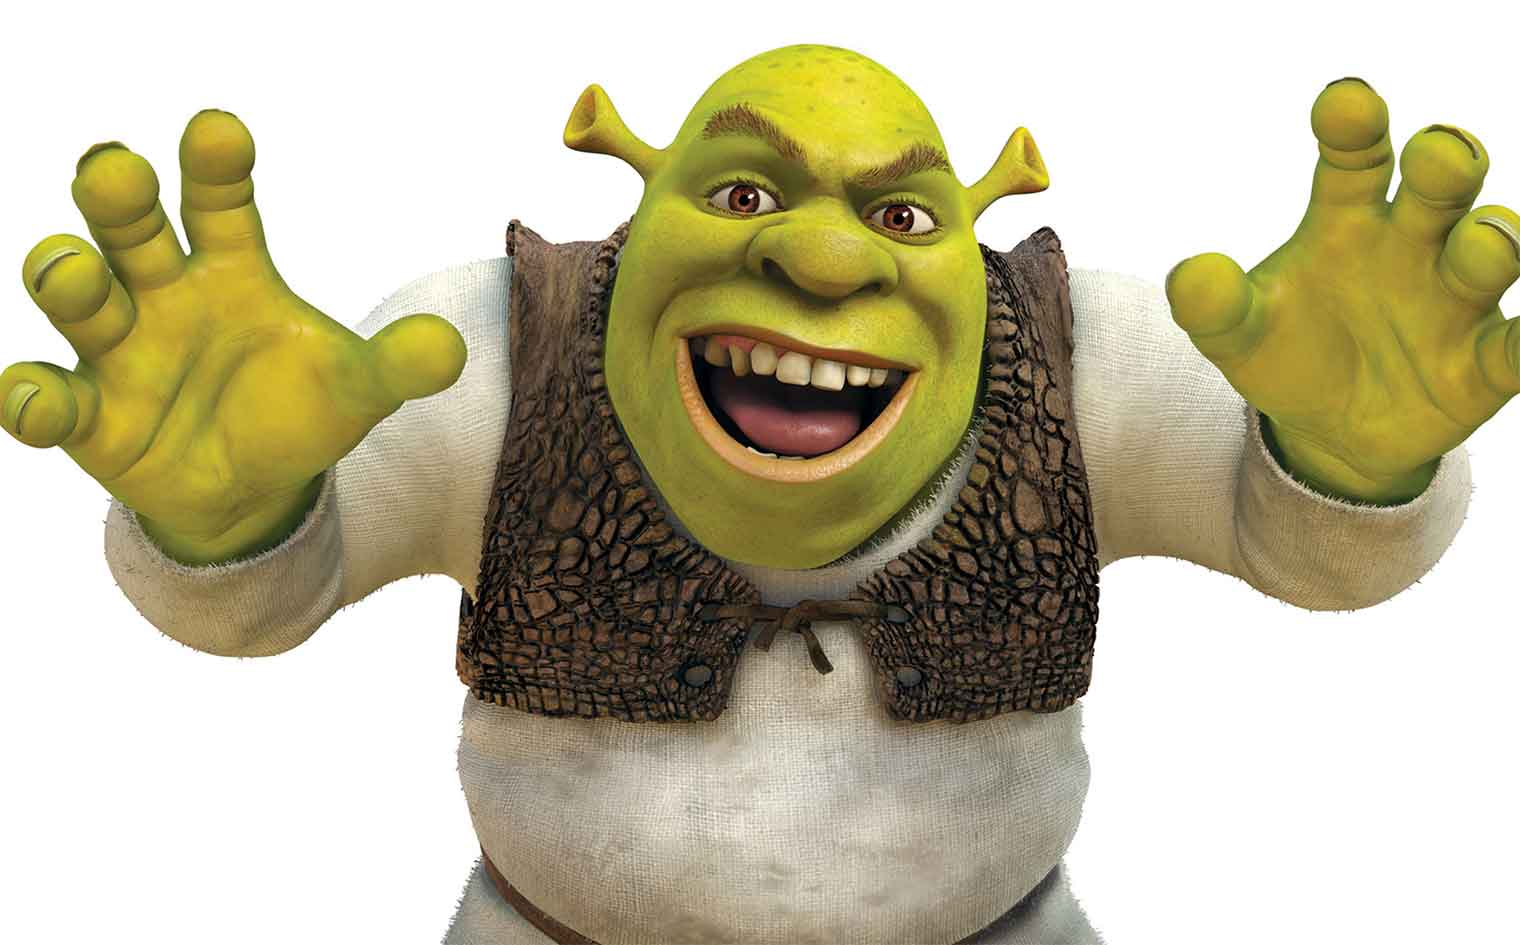 Shrek? Shrek., General Discussion